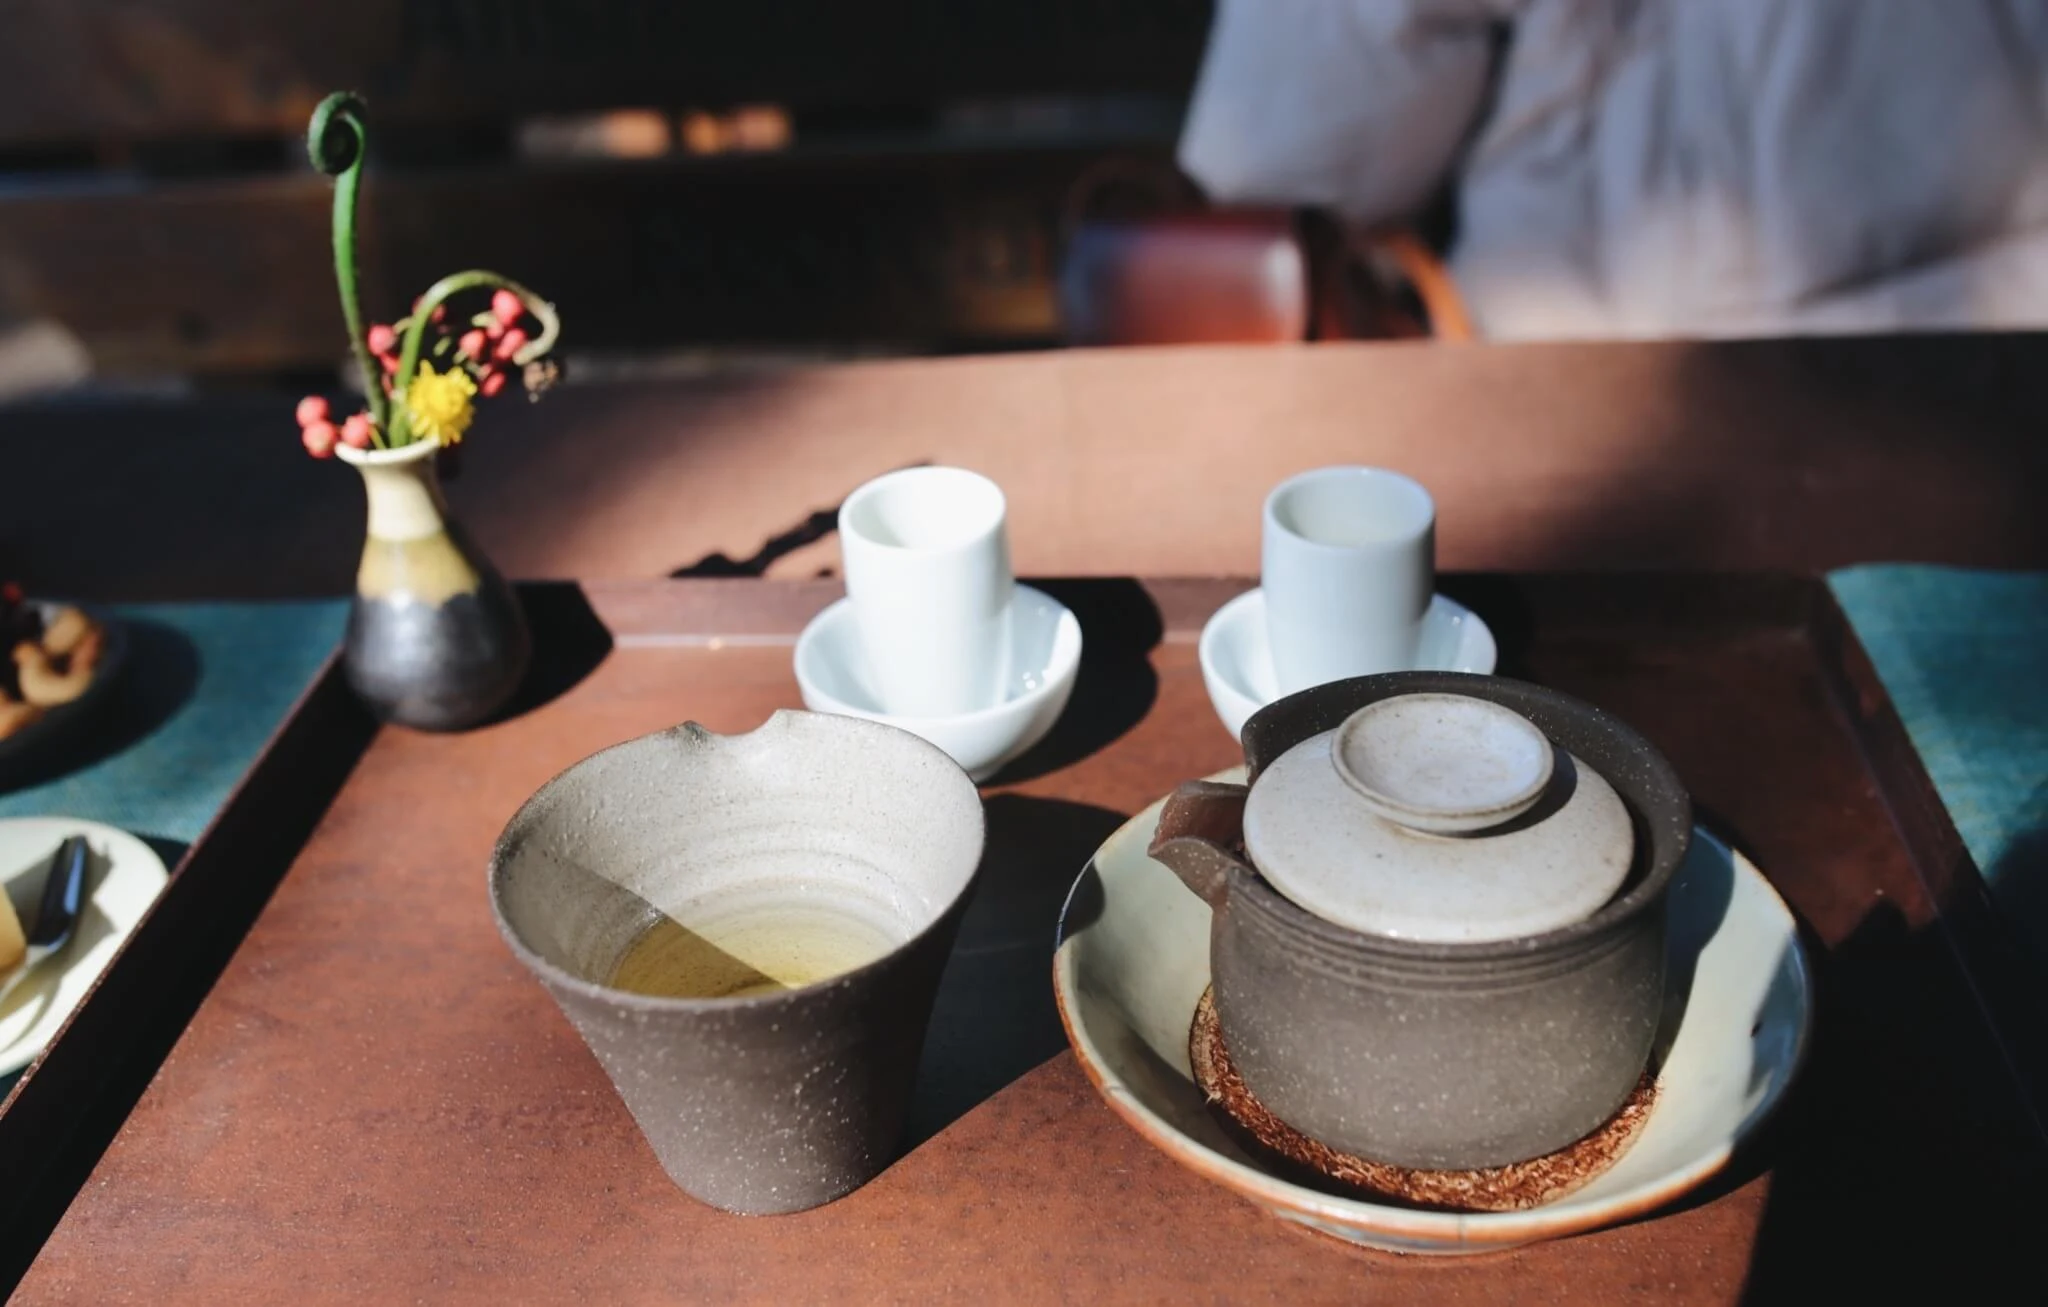 嘉義-阿里山-茶屋-景點-美食-品茶-茶席-茶田35號-菜單-茶文化體驗-評價-茶葉